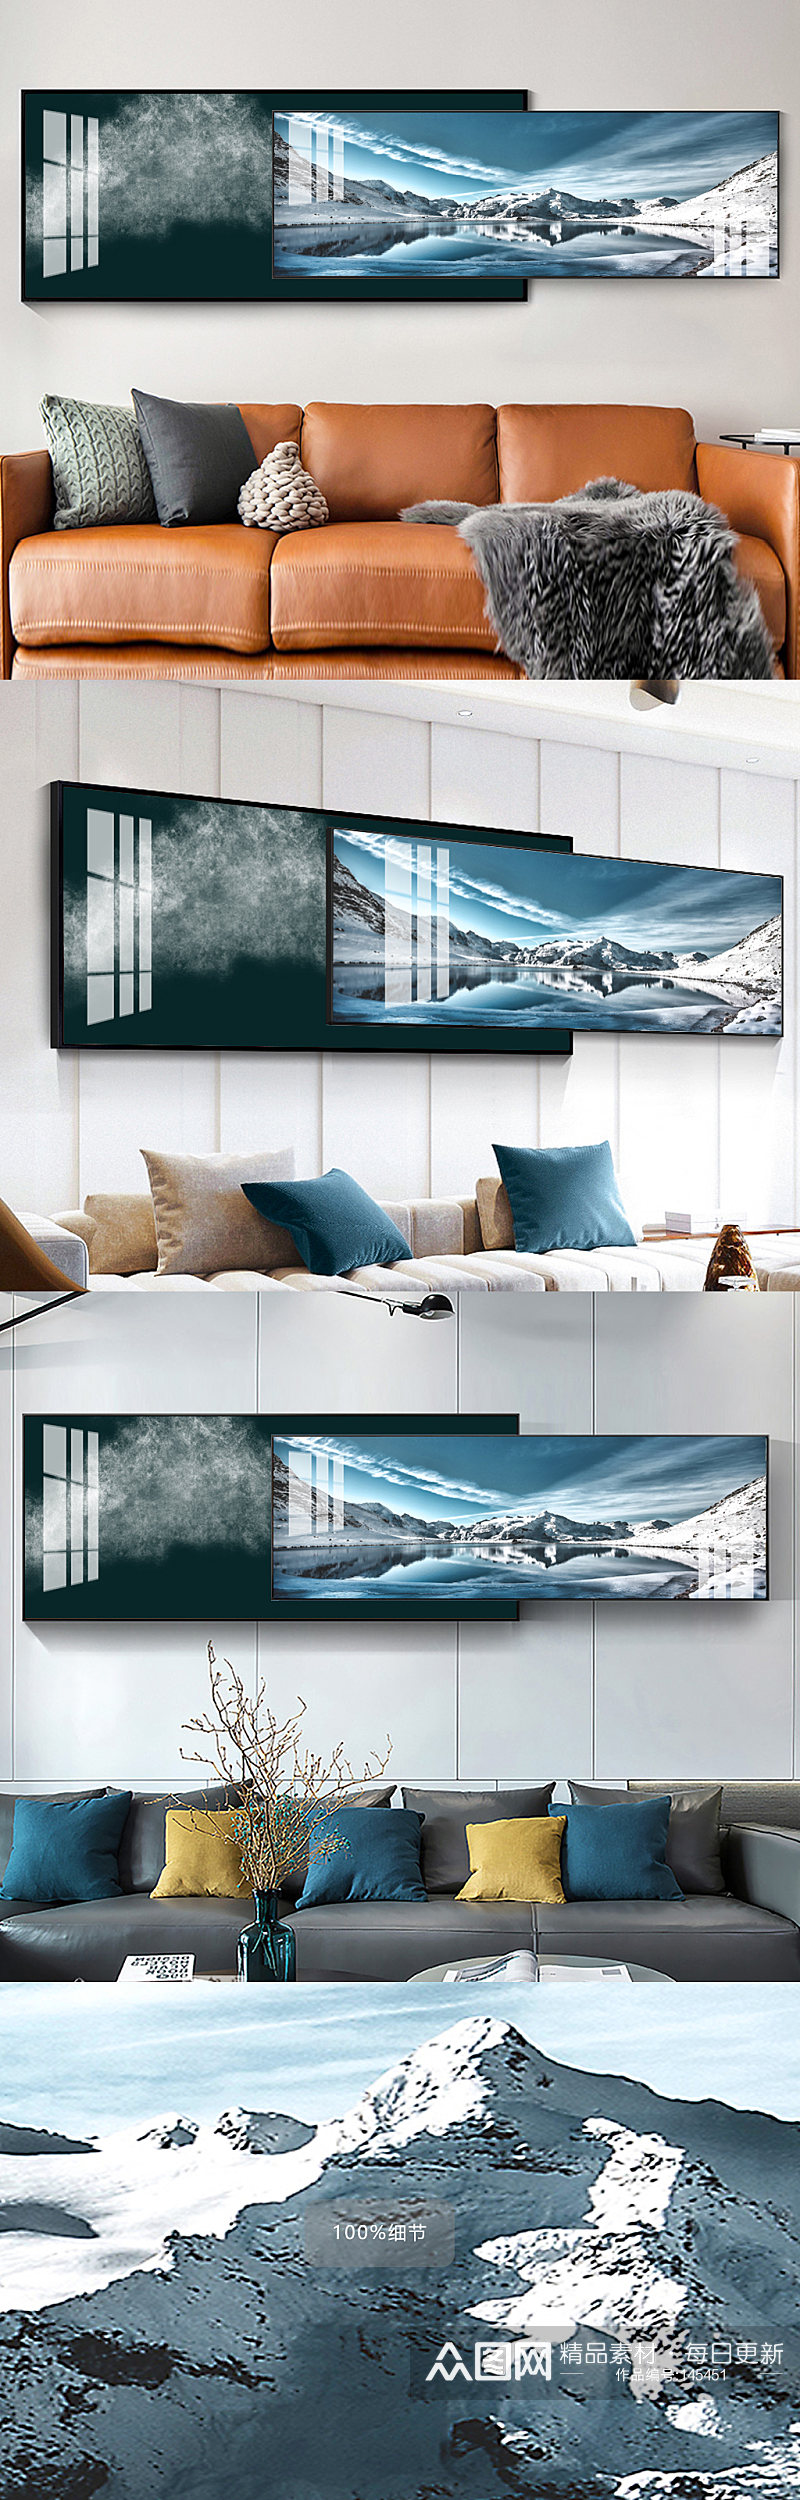 抽象雪山风景组合床头画素材